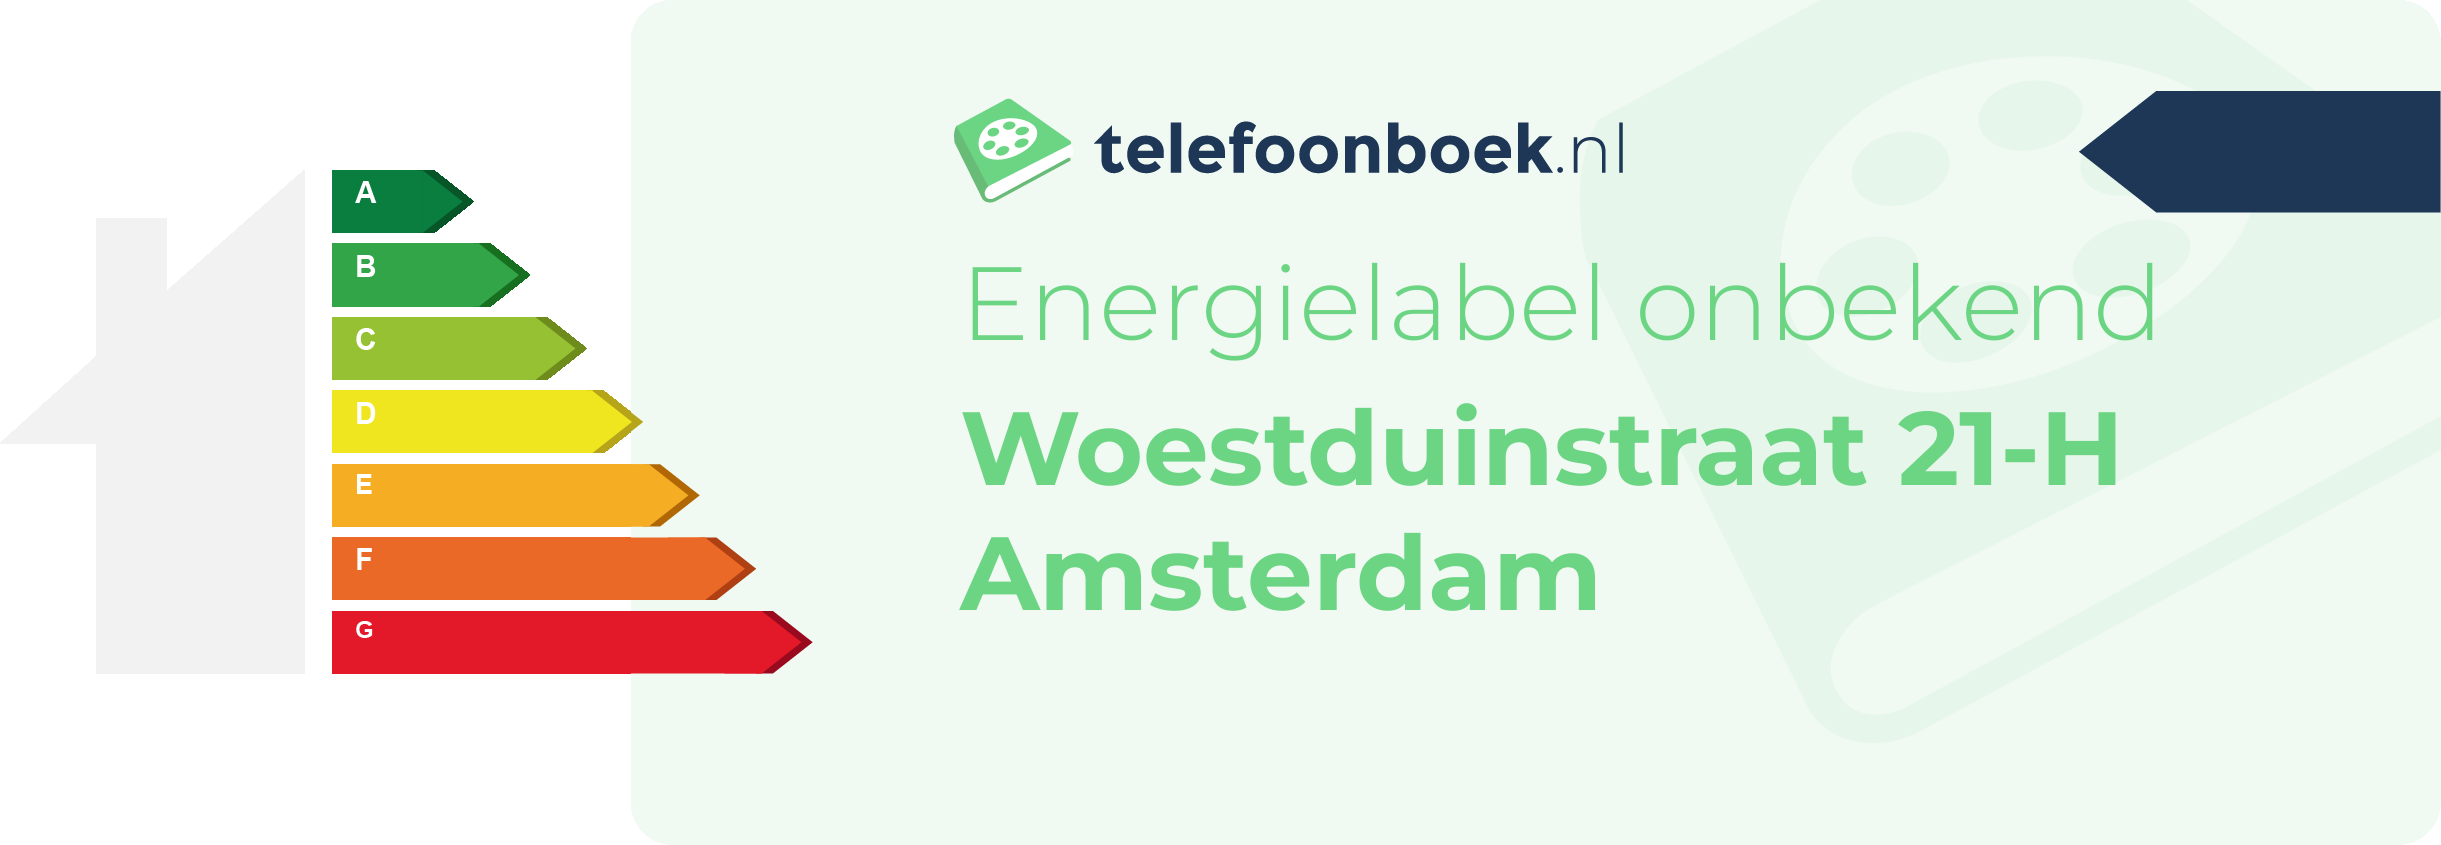 Energielabel Woestduinstraat 21-H Amsterdam